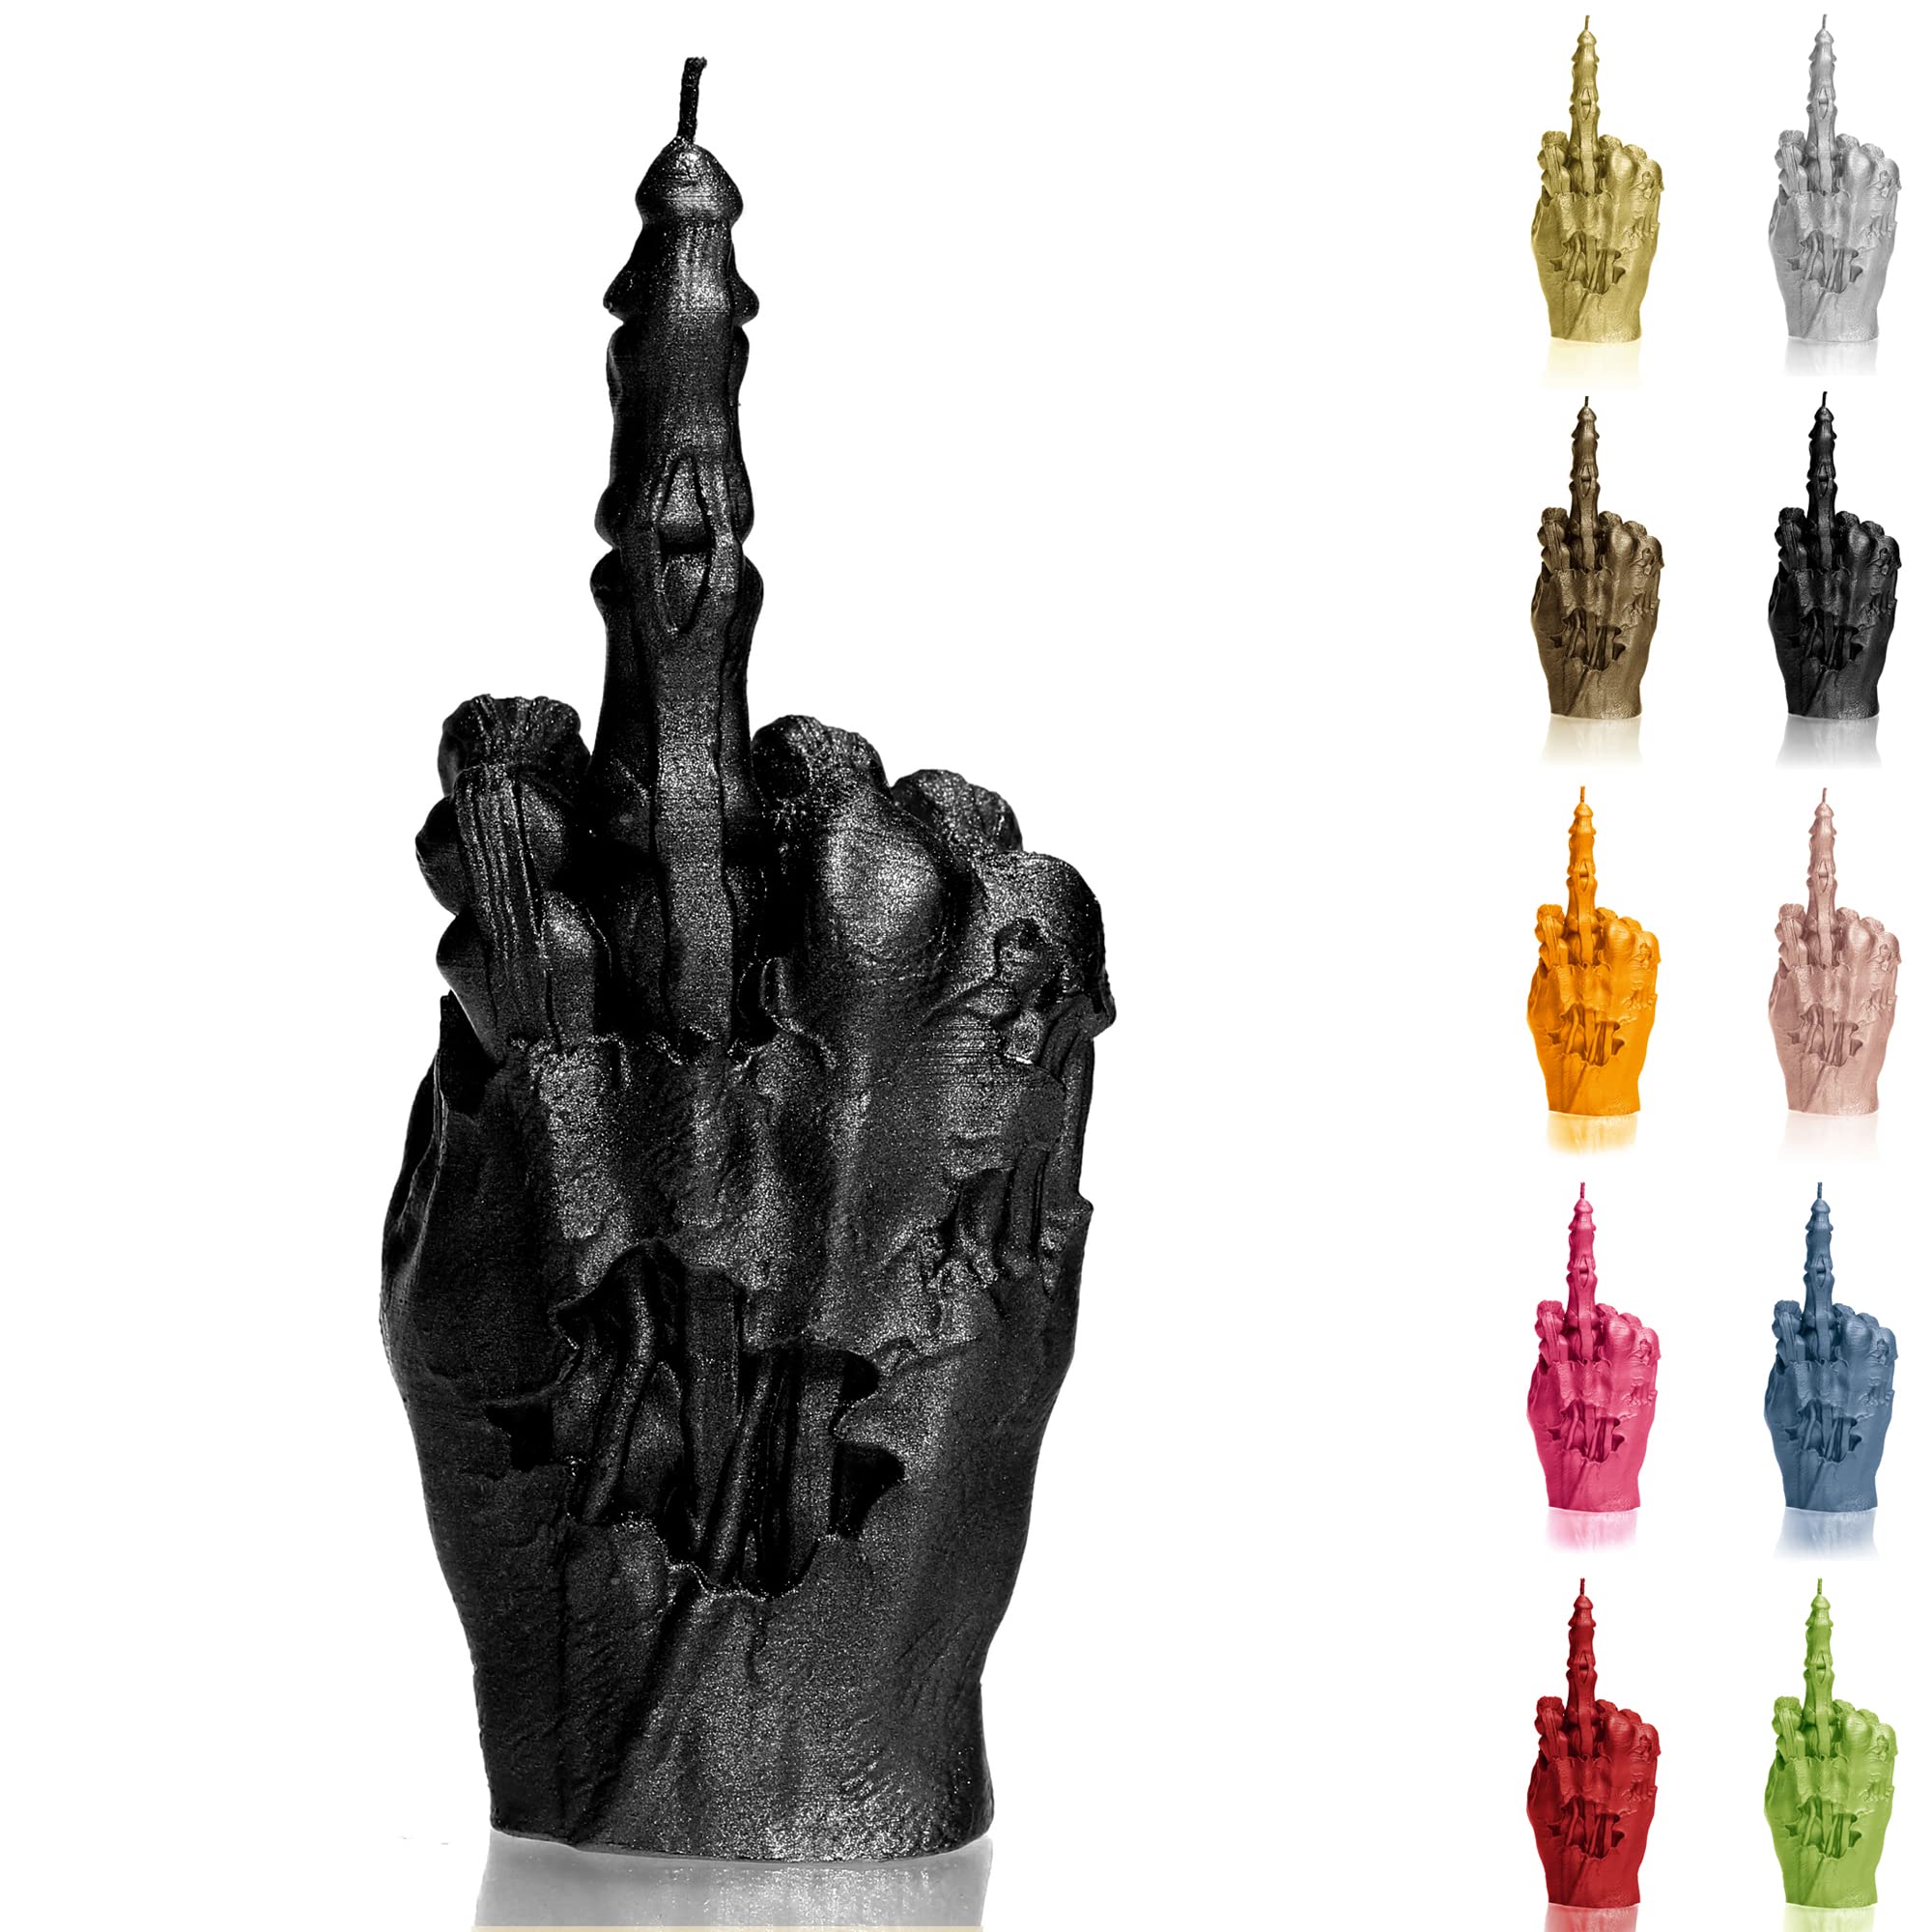 Candellana Kerze in Form eines Mittelfingers | FCK | Höhe: 100 x 70 x 222 mm| Zombie Hand | Schwarz Metalisch | Brennzeit 30h | Kerzengröße gleicht 1:1 Einer realen Hand | Handgefertigt in der EU